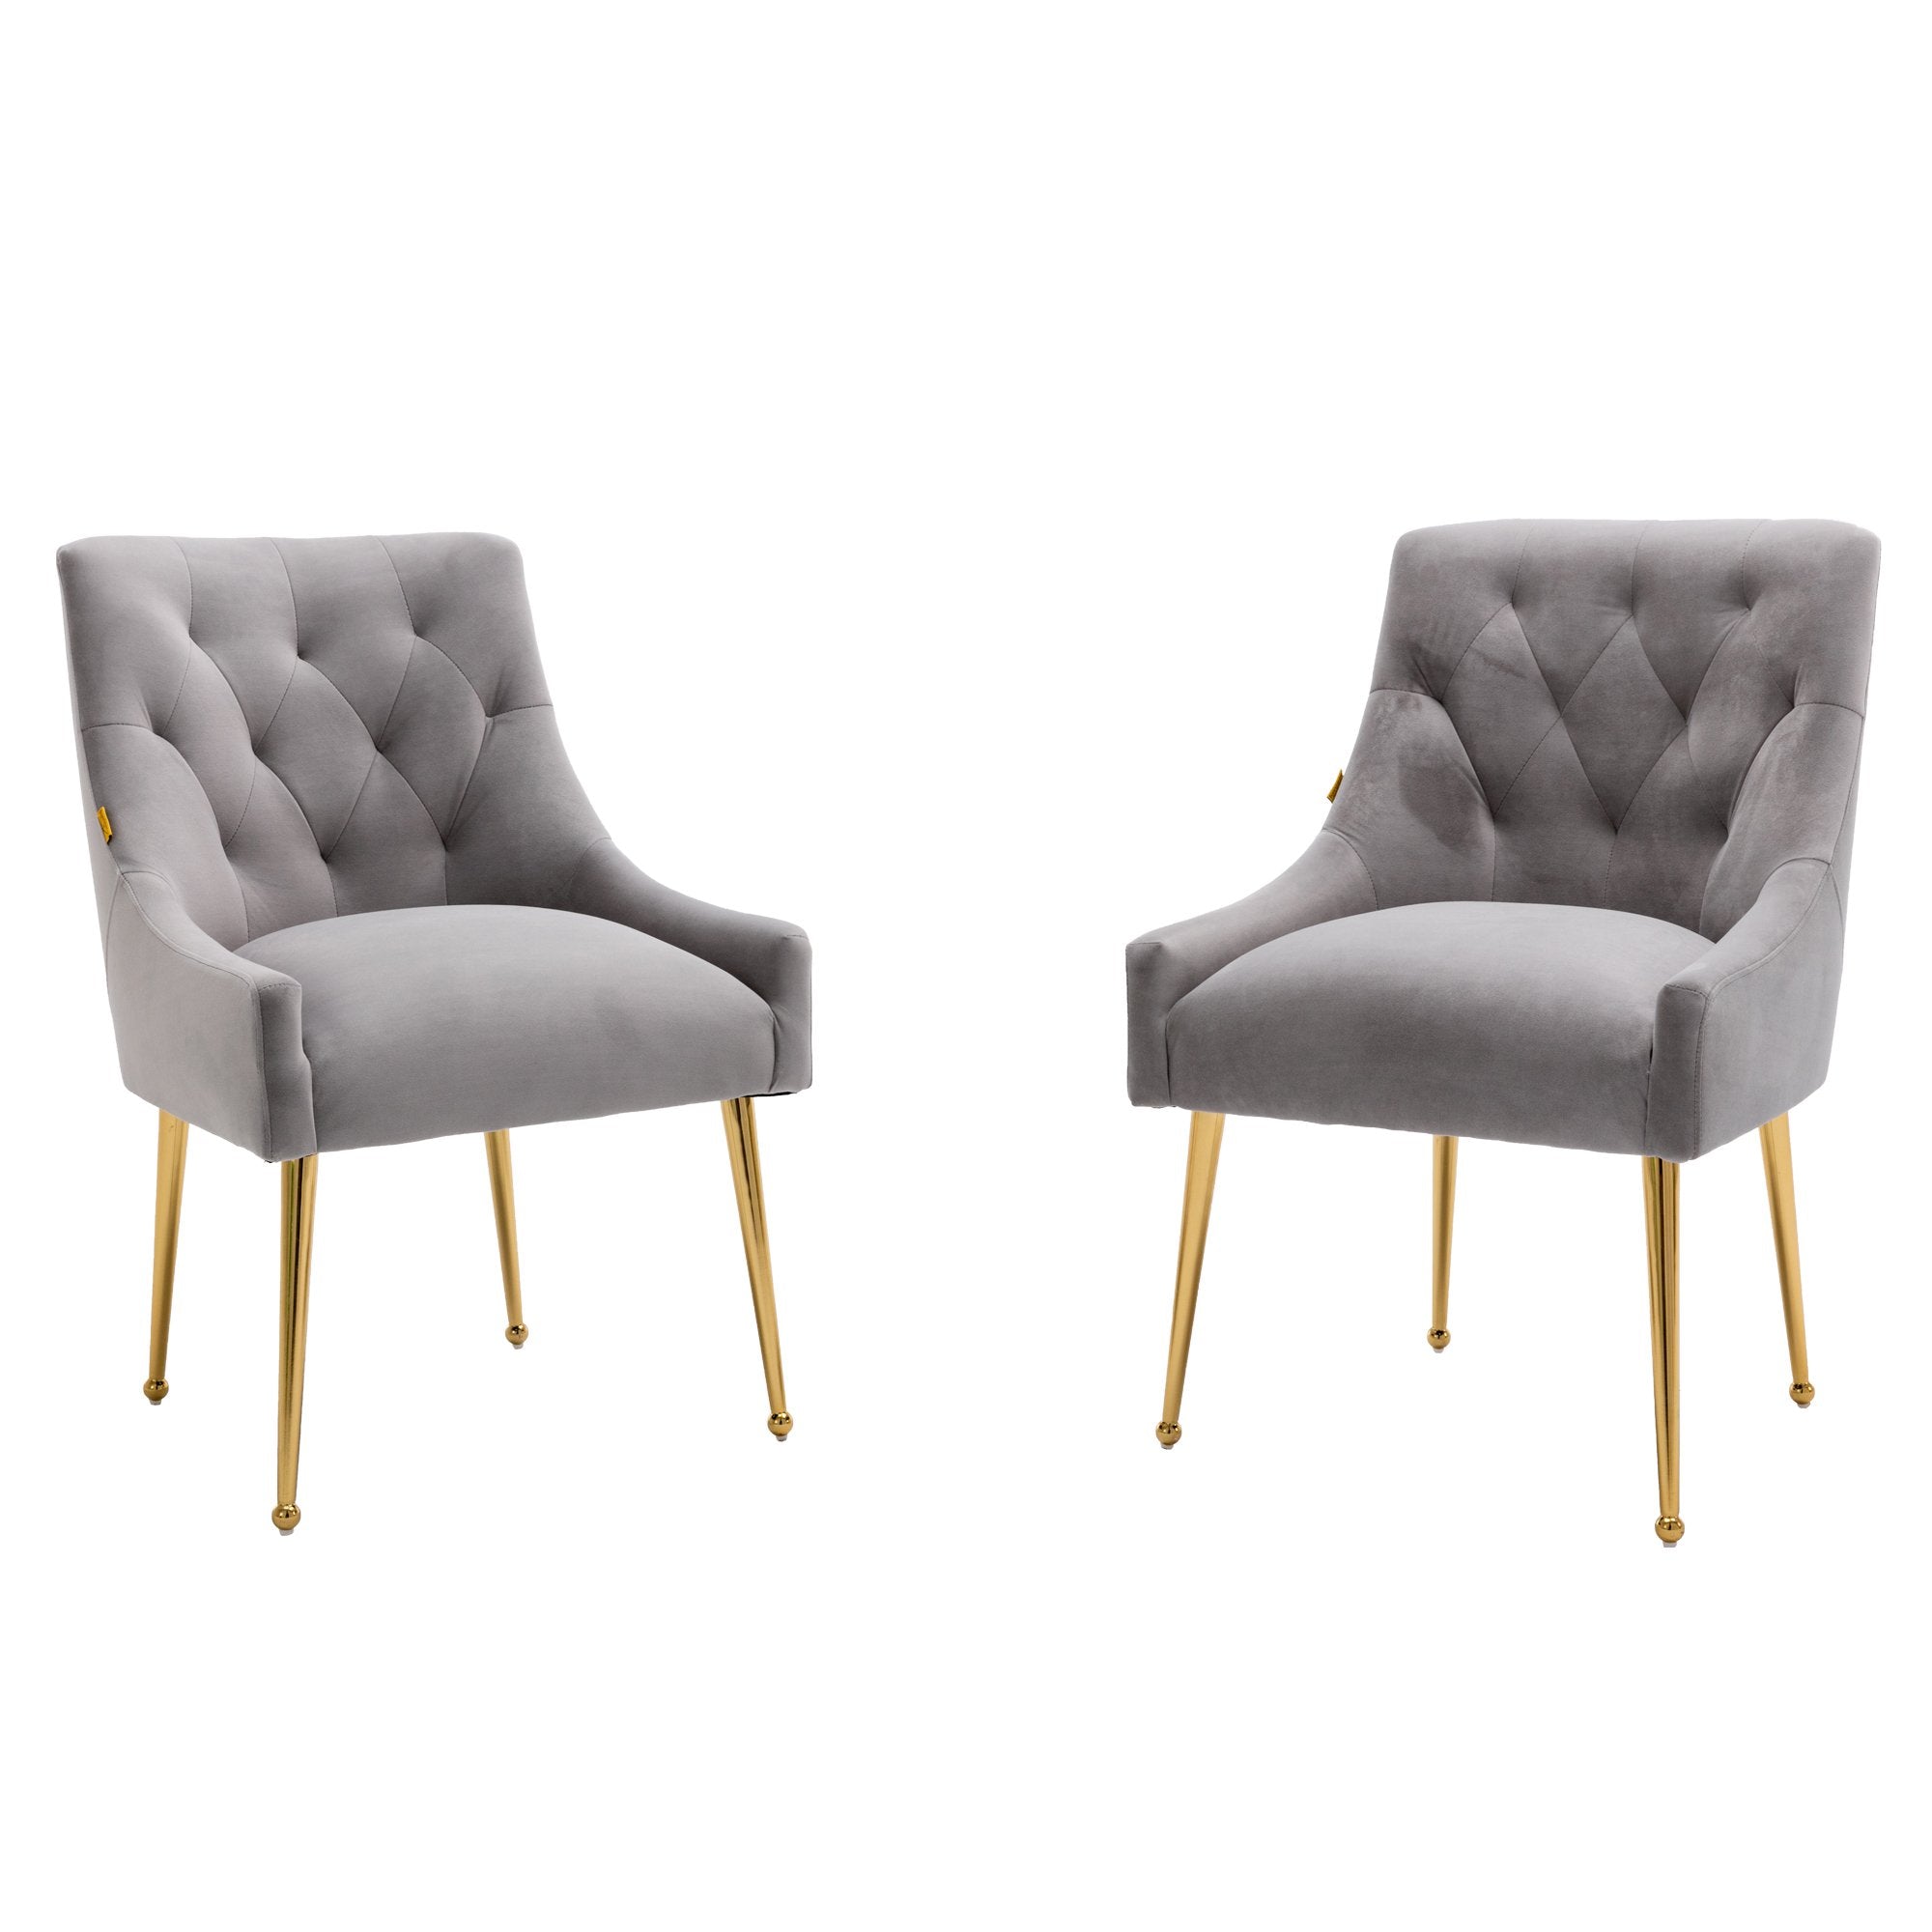 Boyel Living Tufted Velvet Upholstered Dining Chair, Velvet Side Chair, Accent Chair - Set of 2-Boyel Living